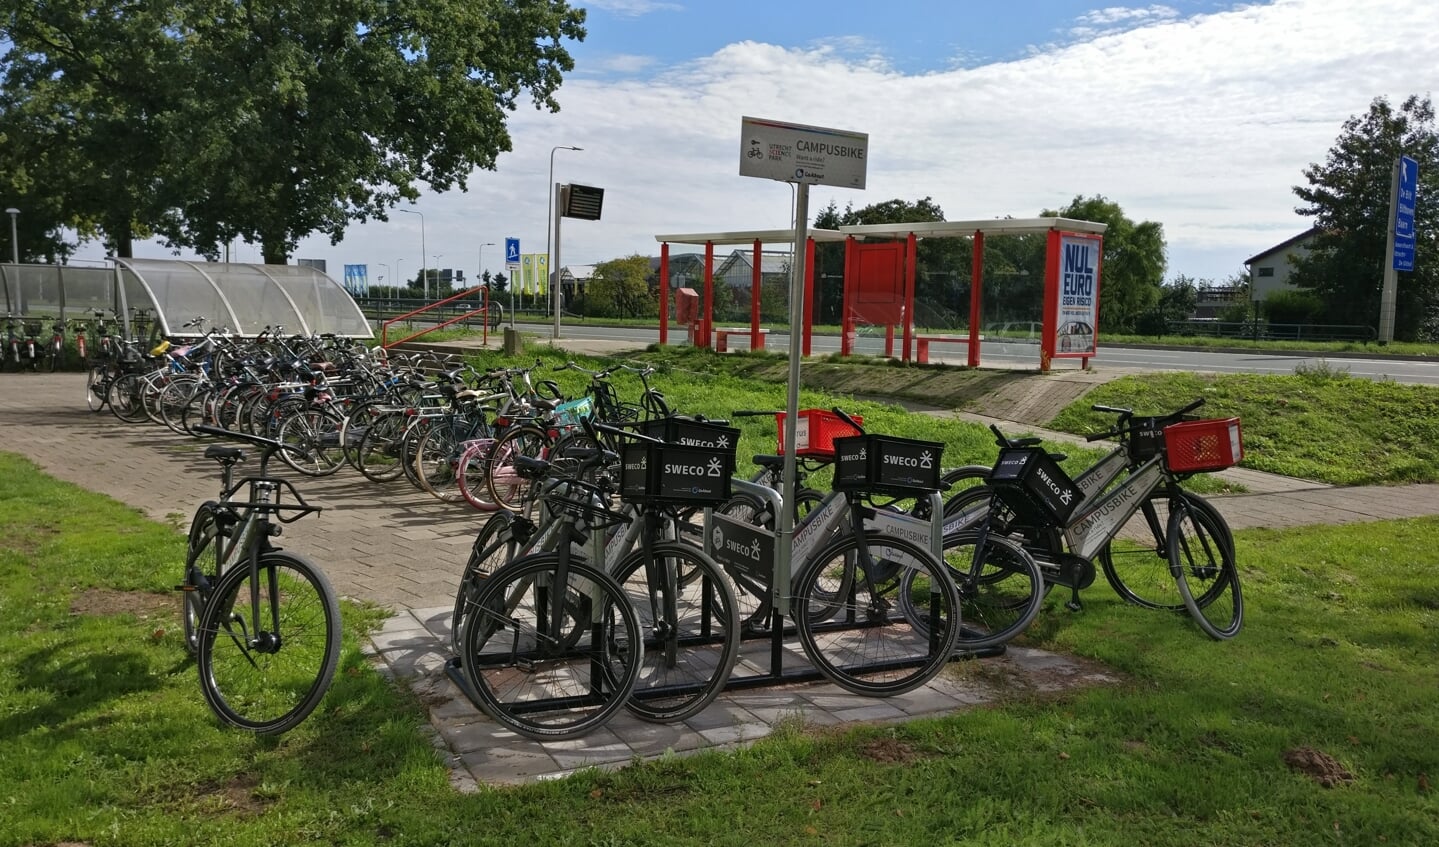 De fietsen van Campus bike staan in De Bilt o.a. in de tuin van Biltsteyn. 